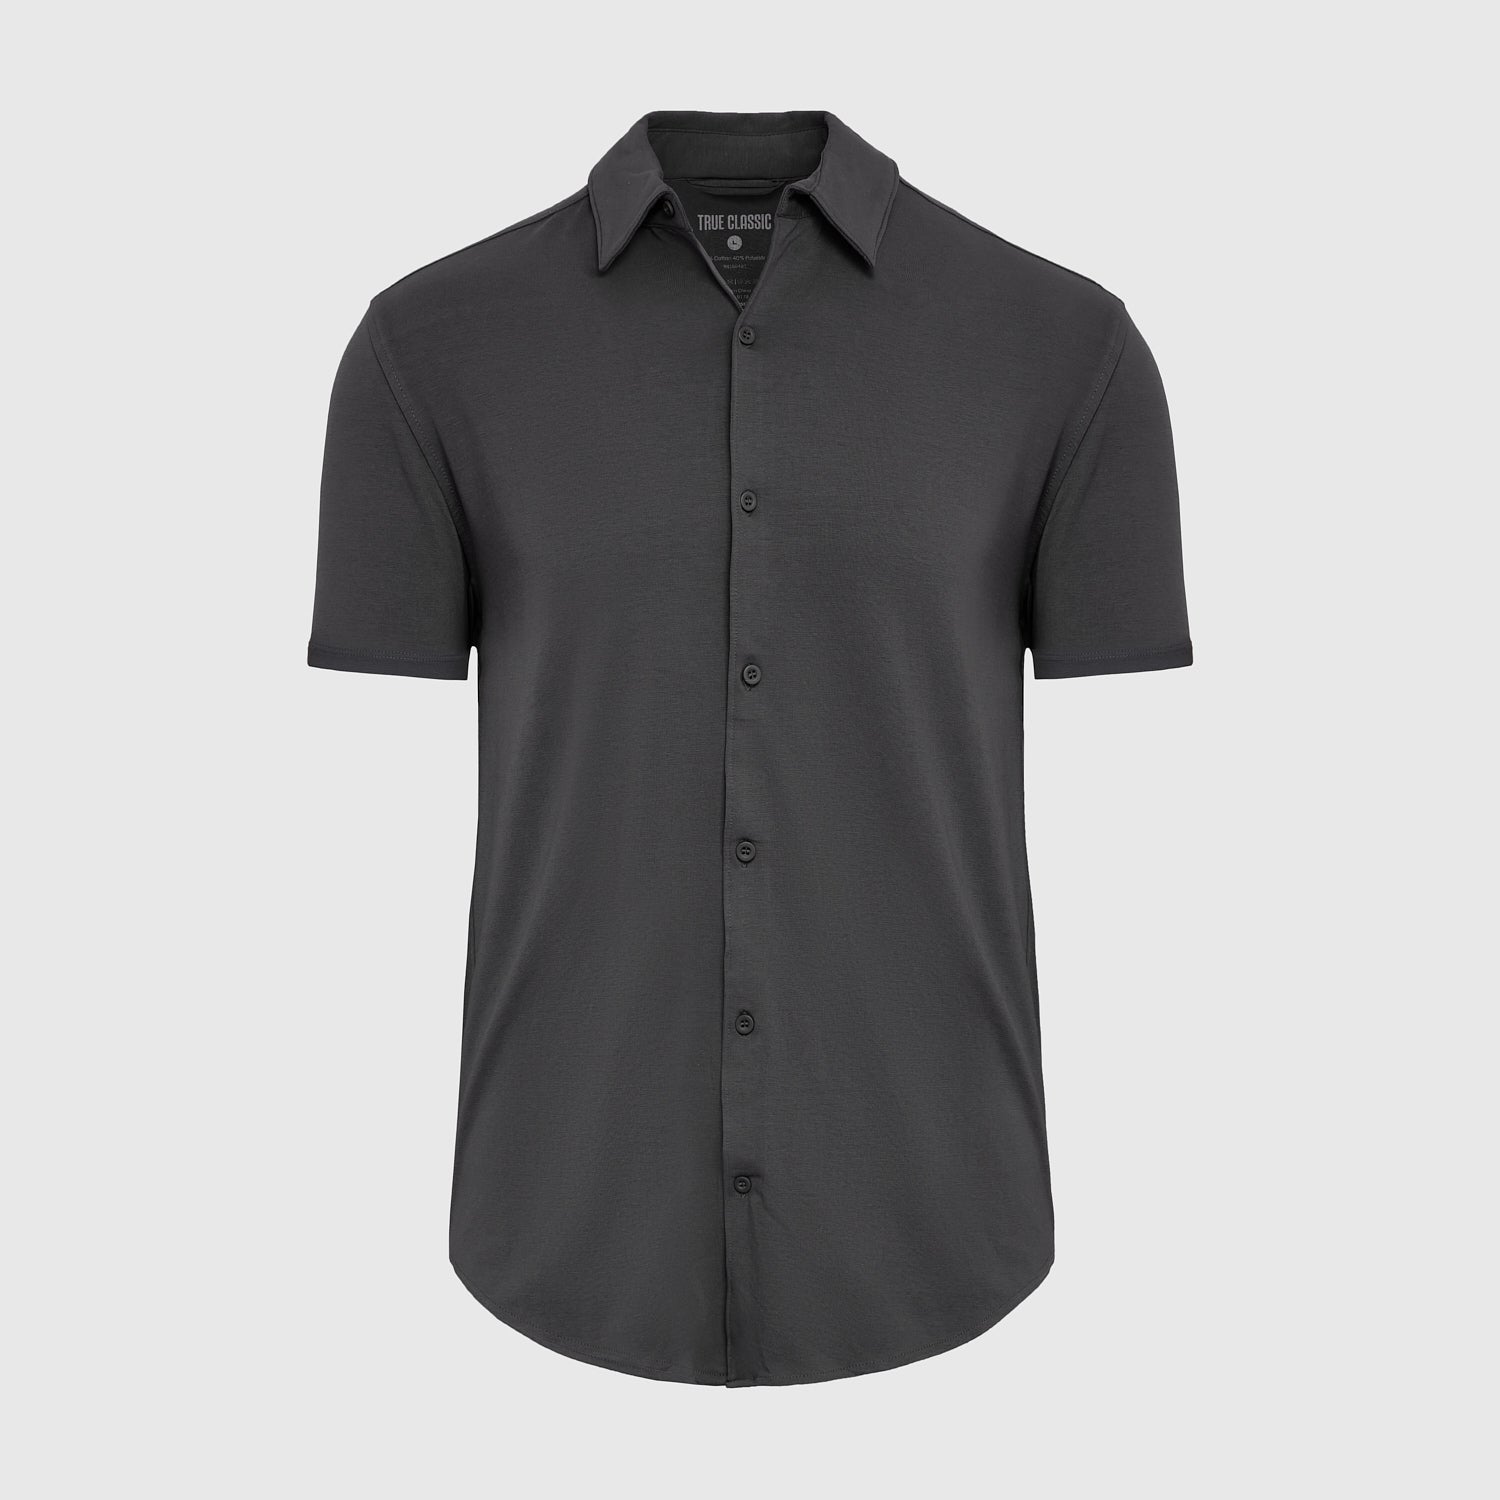 Black Short Sleeve Button Up Shirt – True Classic